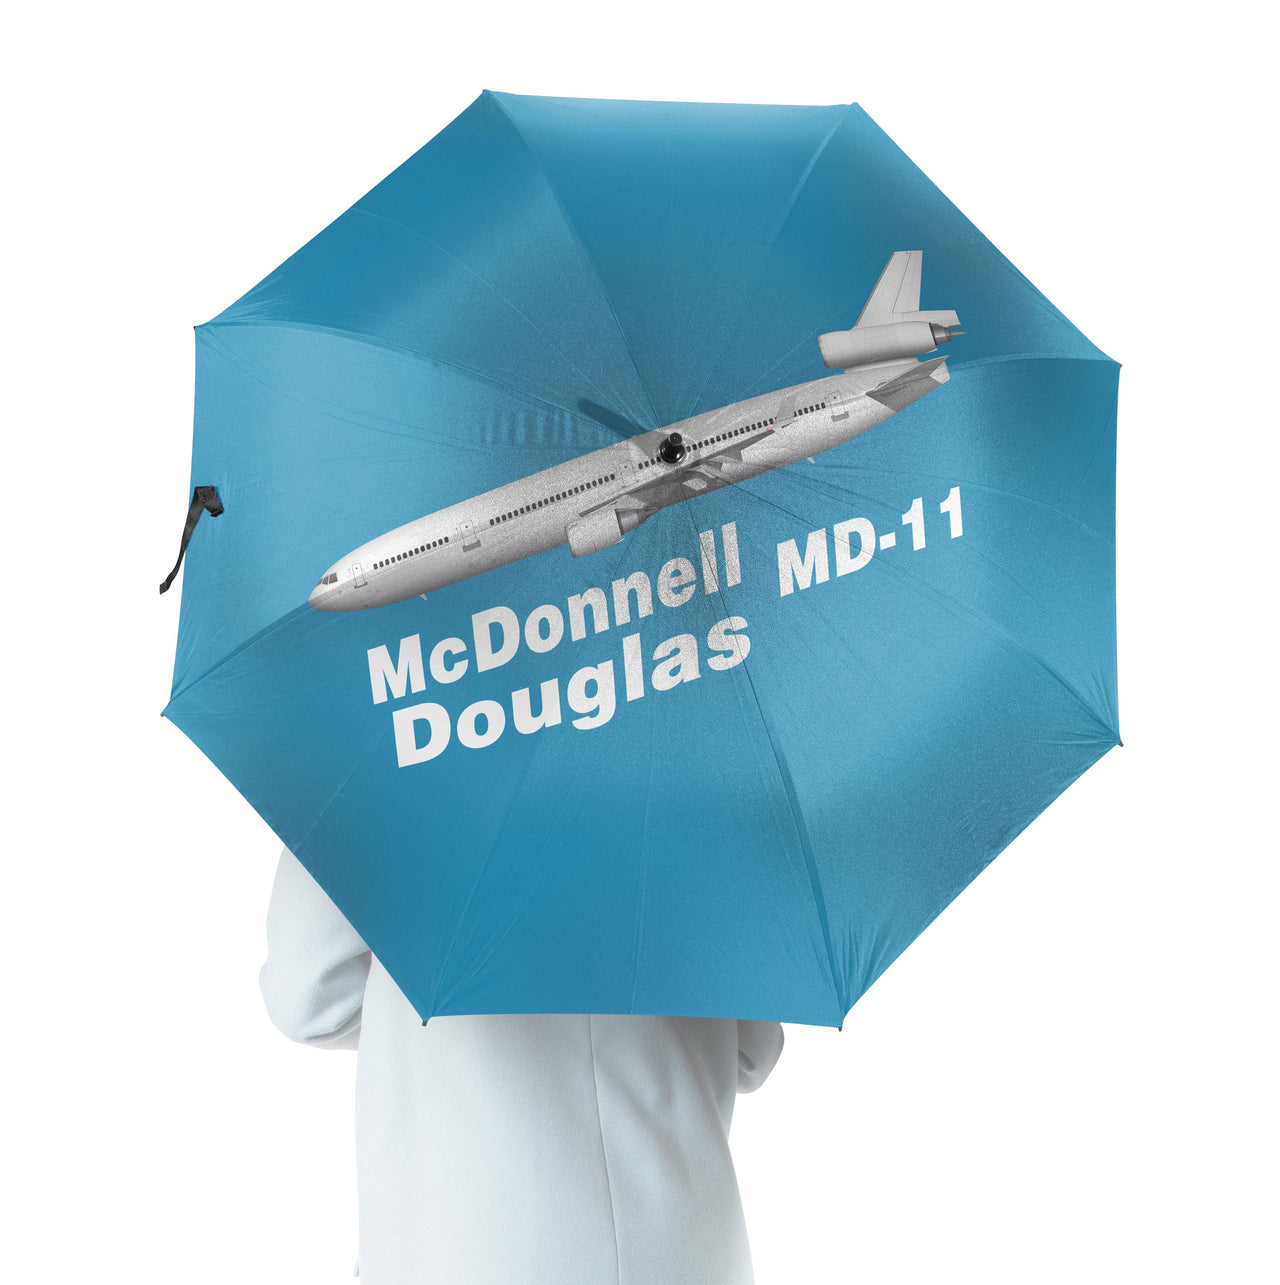 The McDonnell Douglas MD-11 Designed Umbrella